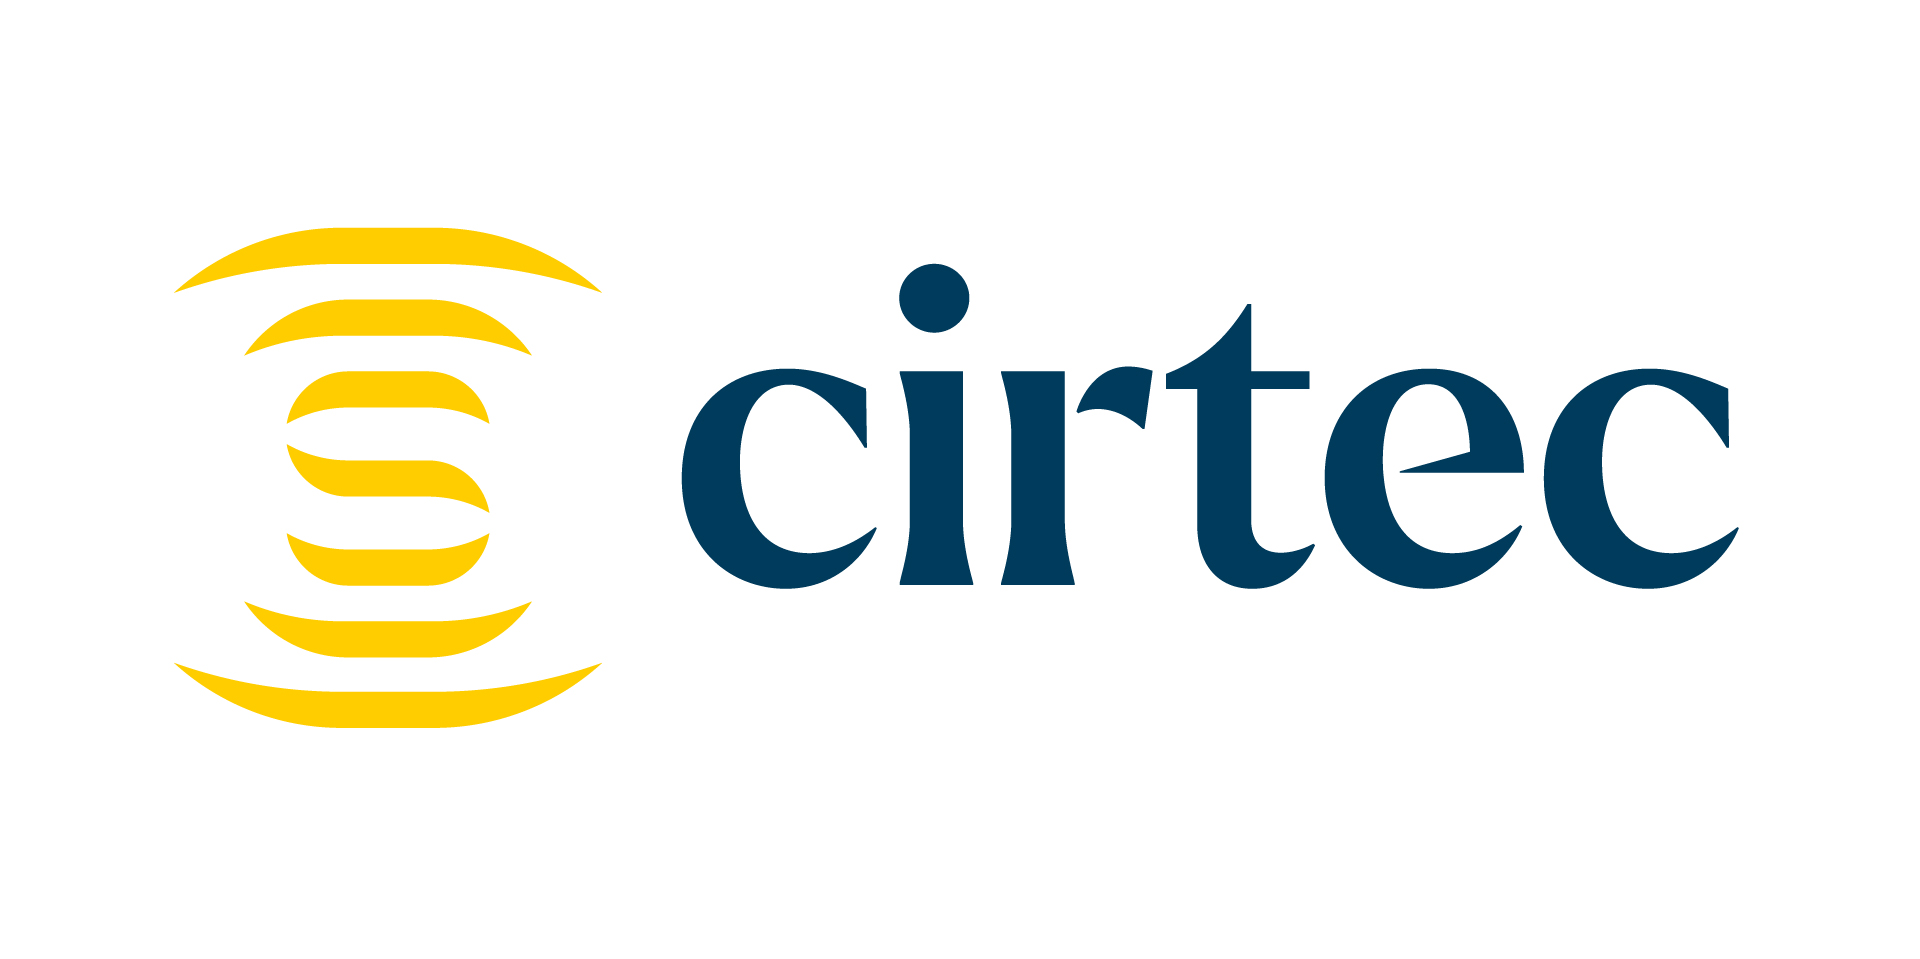 Logo Cirtec